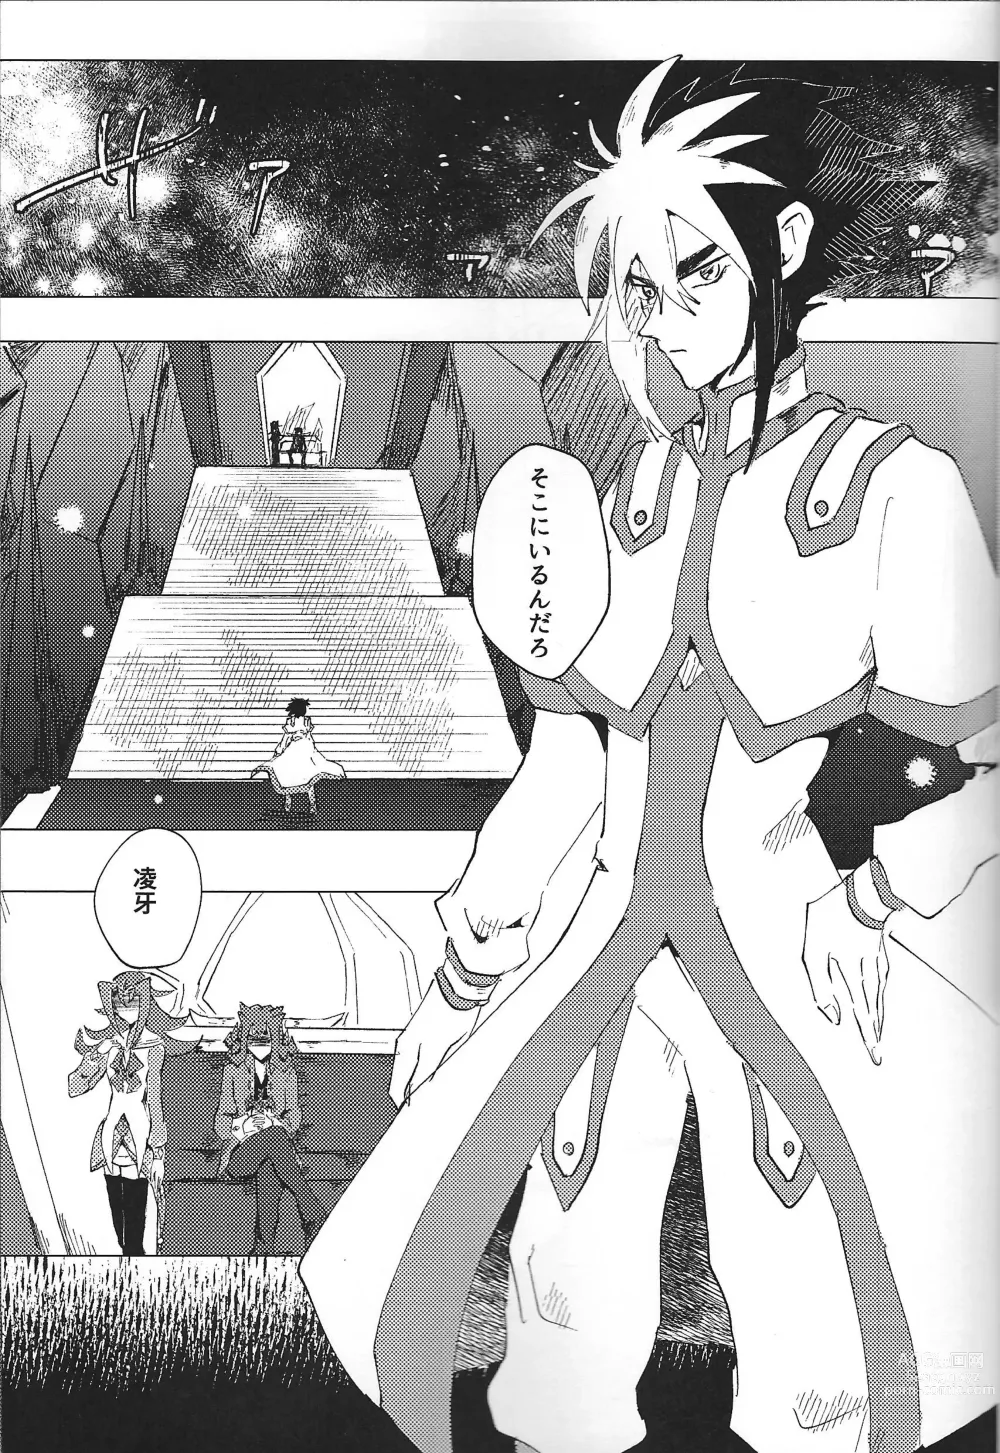 Page 17 of doujinshi ChaosPhantasma